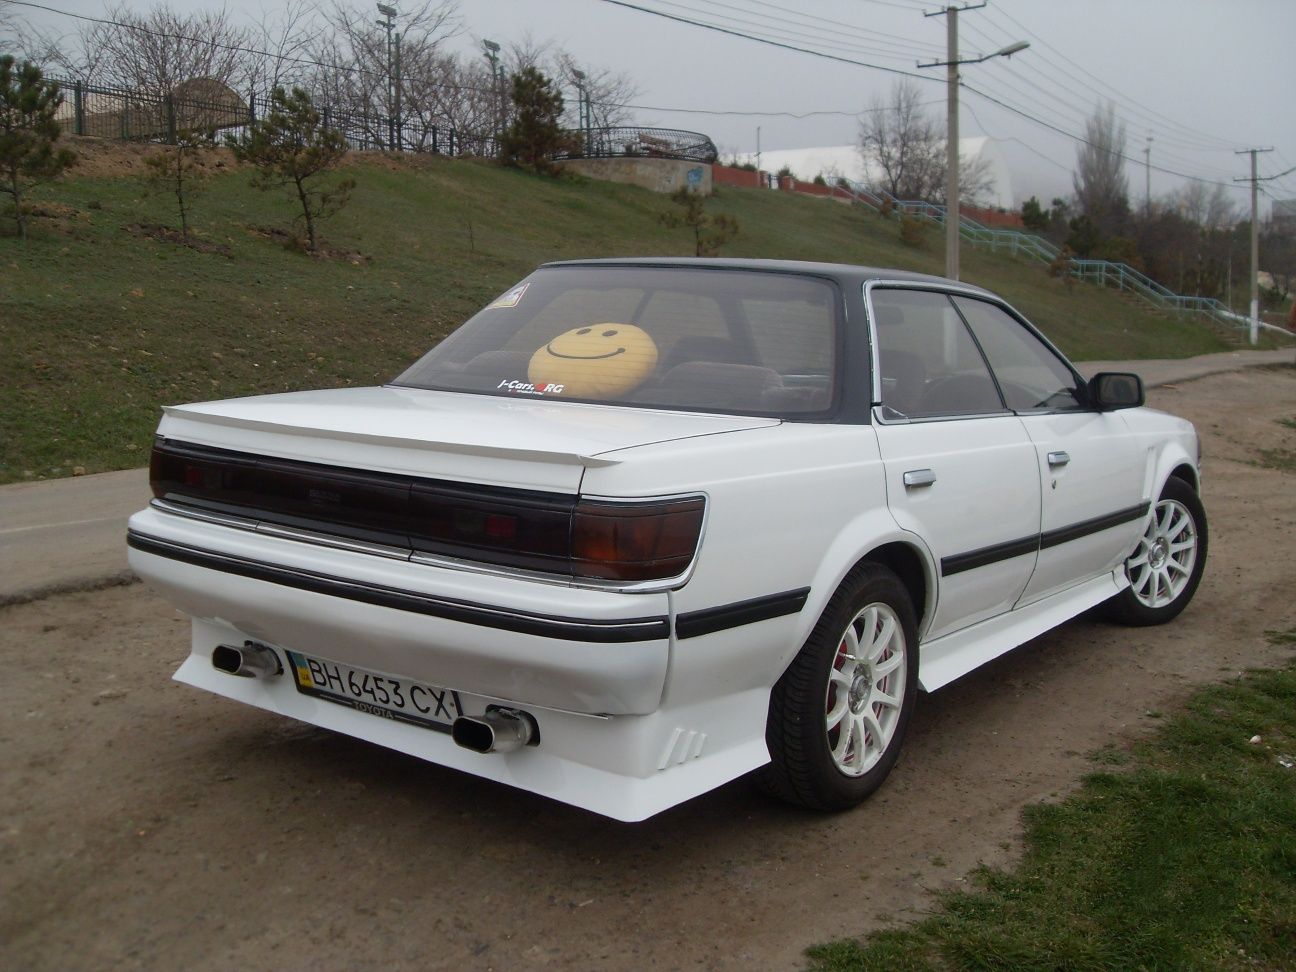 Продам Toyota Carina ED, 1.8, АКПП, 1990 г, в очень хорошем состоянии!